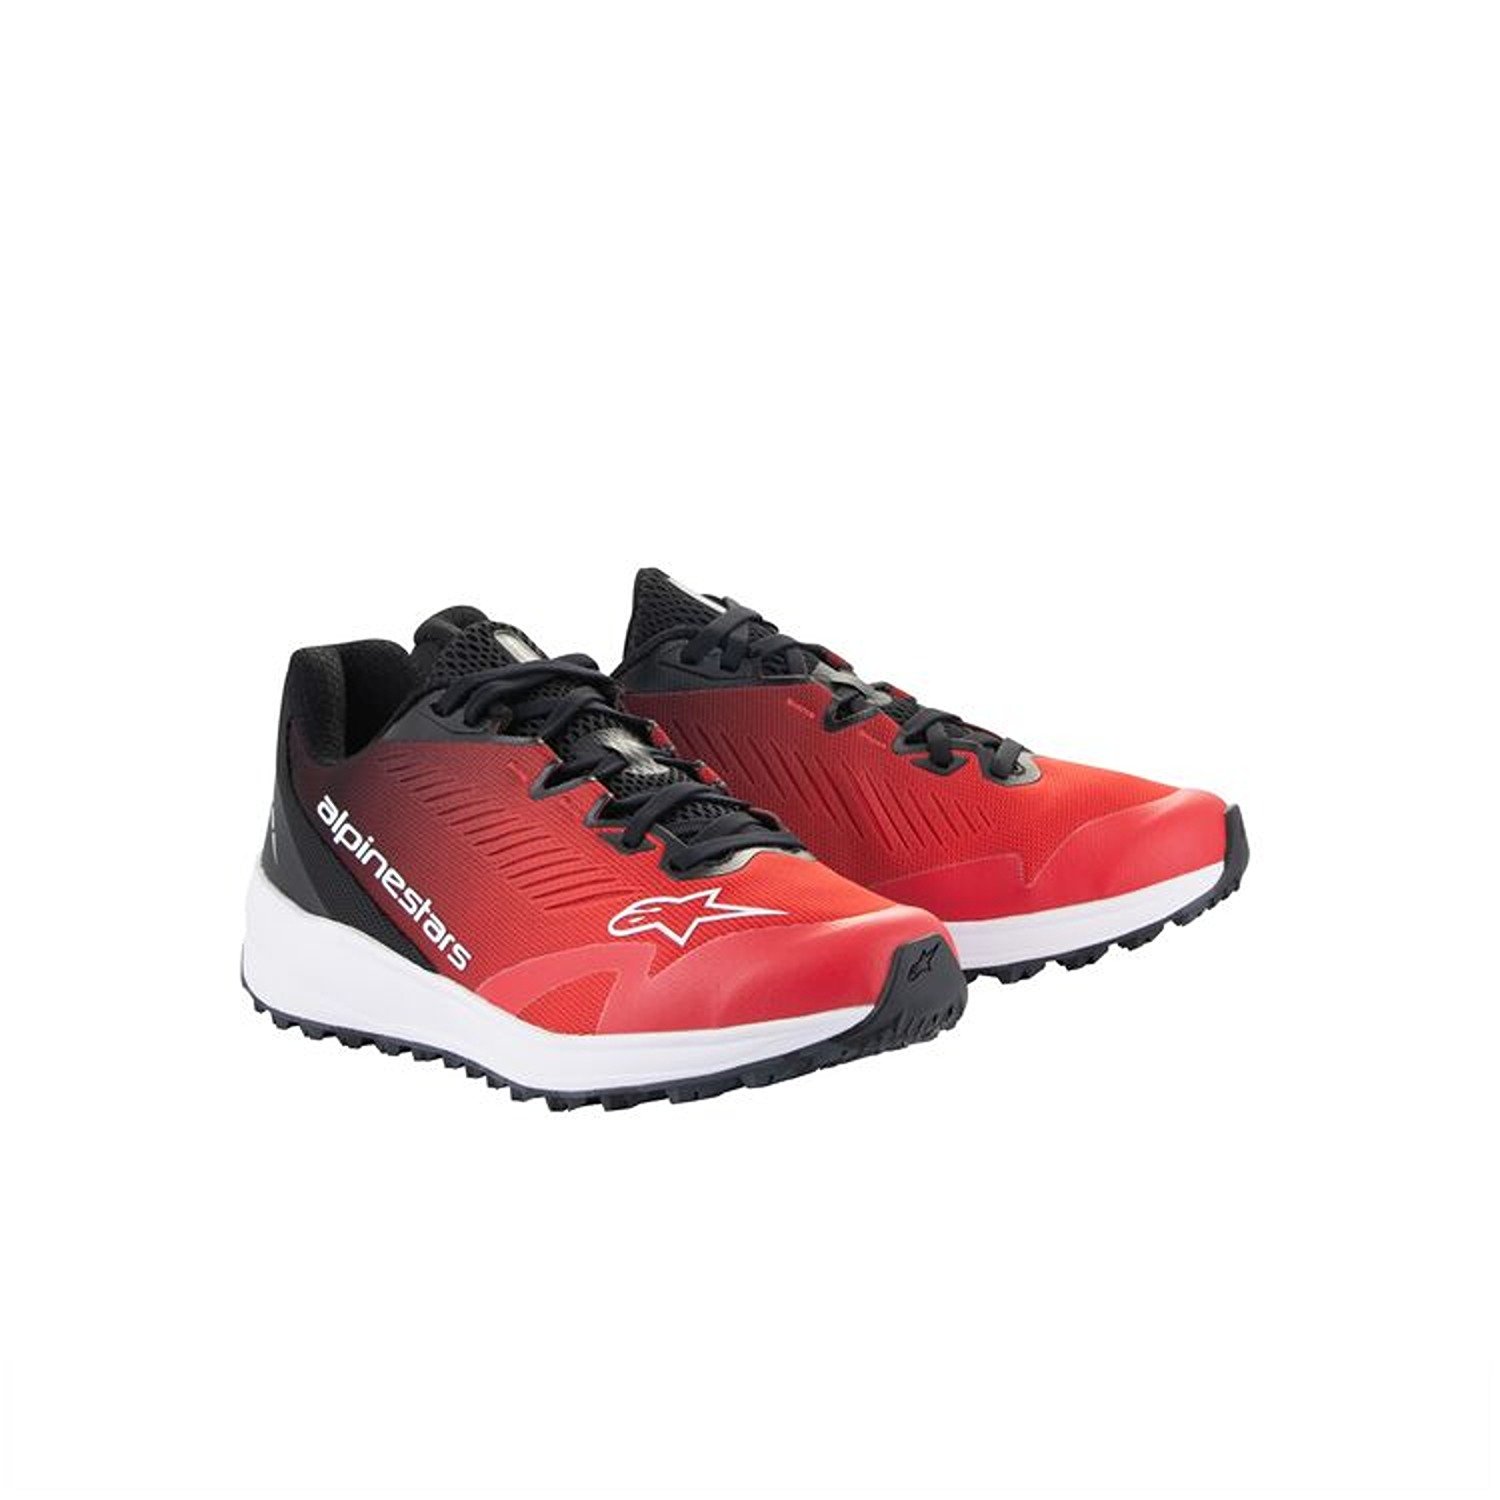 Image of Alpinestars Meta Road V2 Shoes Red Black White Größe US 8